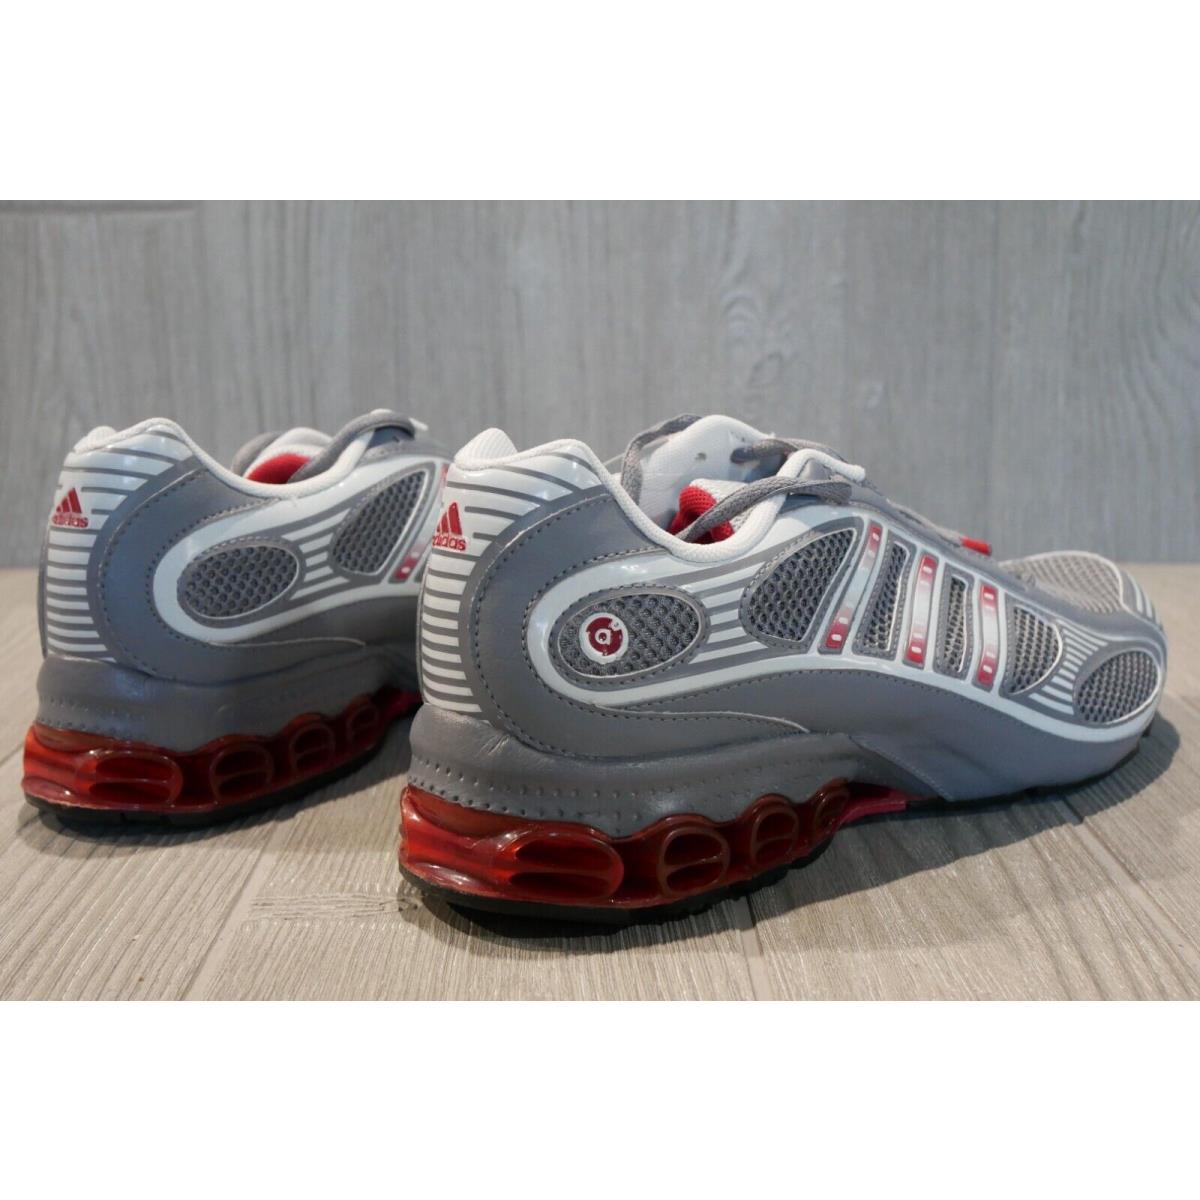 Adidas shoes Cub - grey 3